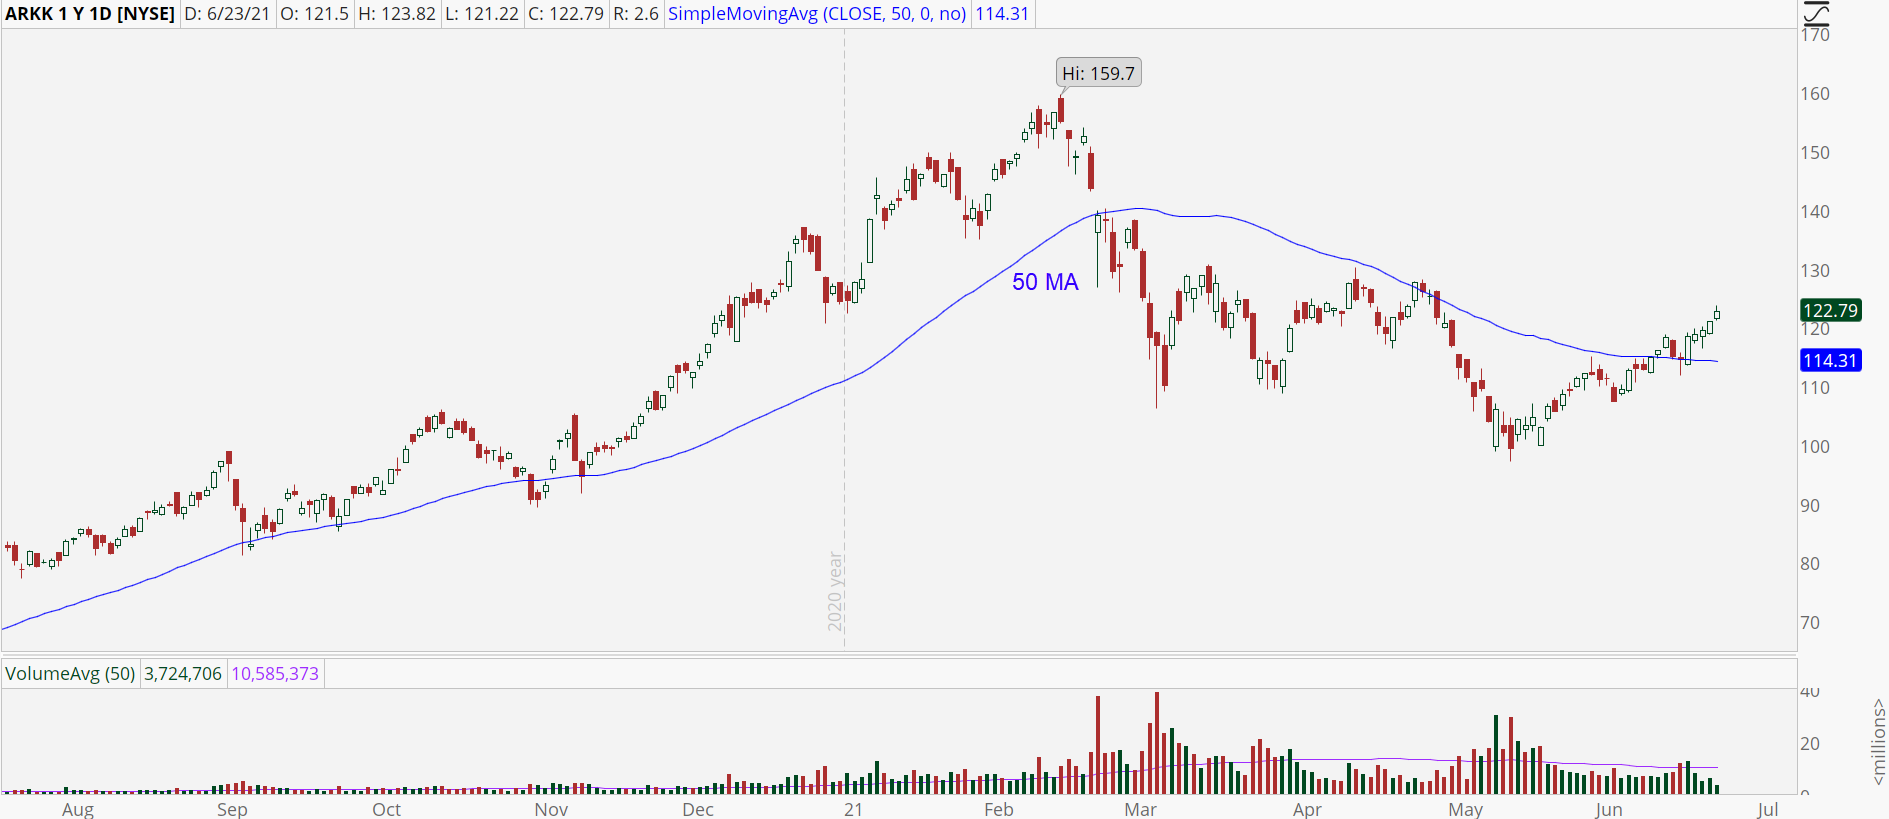 Ark Innovation ETF (ARKK) stock chart with bull trend reversal.